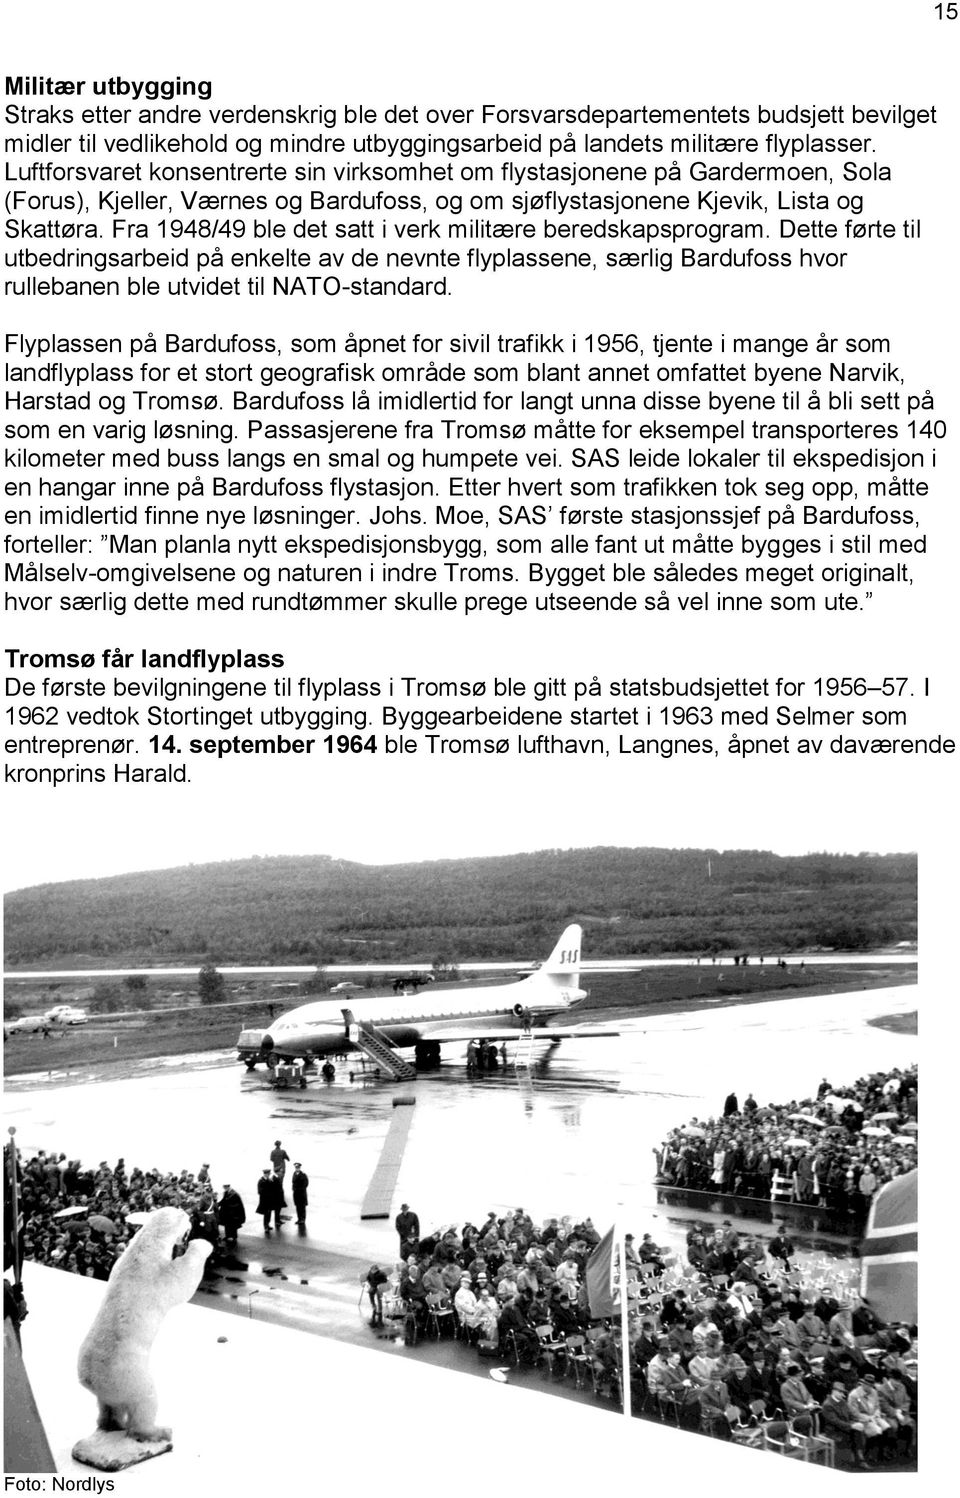 Fra 1948/49 ble det satt i verk militære beredskapsprogram. Dette førte til utbedringsarbeid på enkelte av de nevnte flyplassene, særlig Bardufoss hvor rullebanen ble utvidet til NATO-standard.